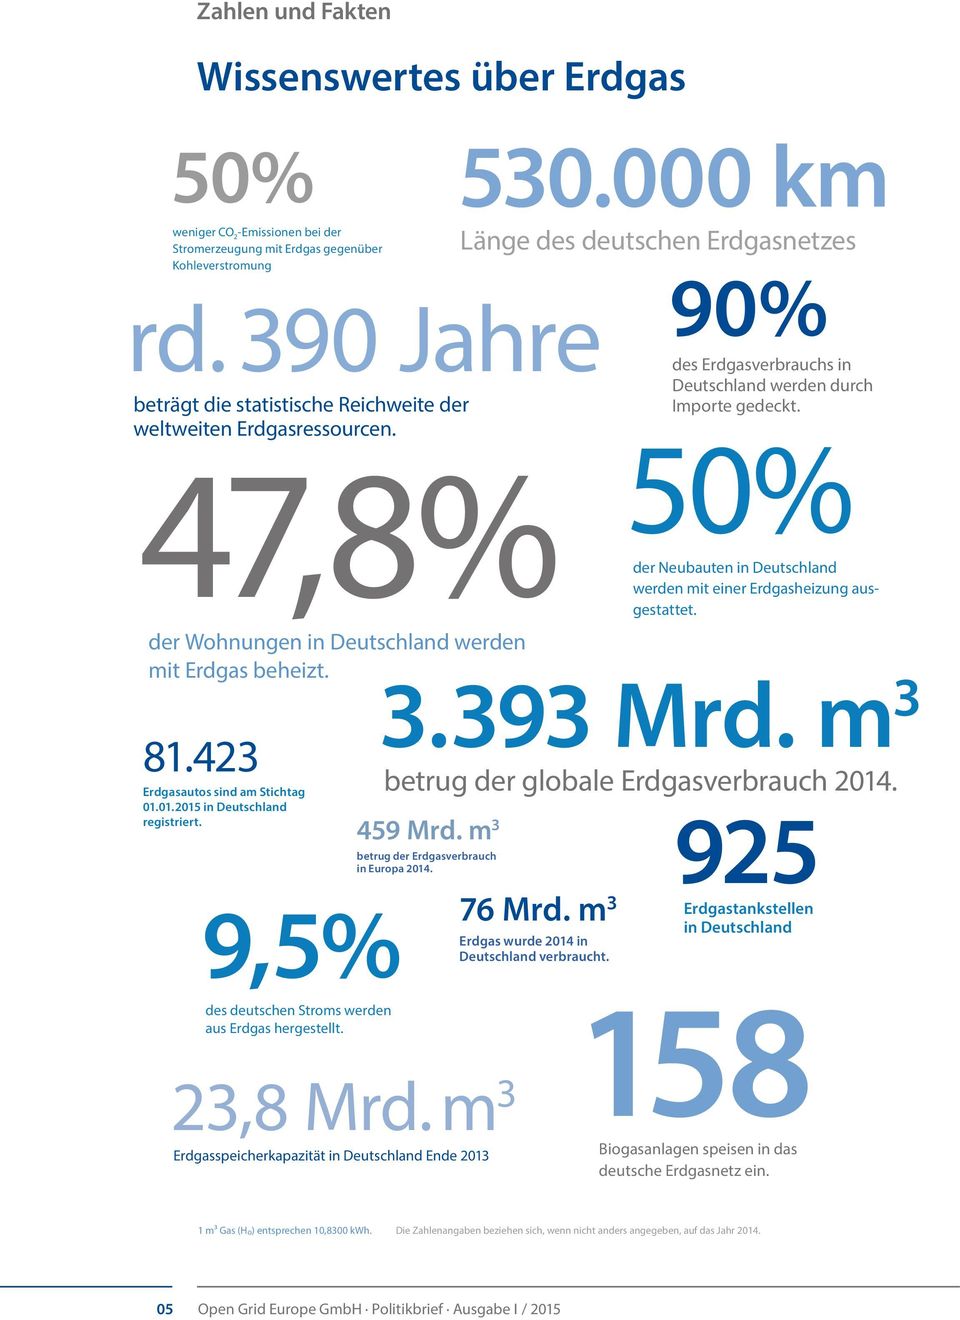 01.2015 in Deutschland registriert. 9,5% 530.000 km Länge des deutschen Erdgasnetzes 90% des Erdgasverbrauchs in Deutschland werden durch Importe gedeckt.